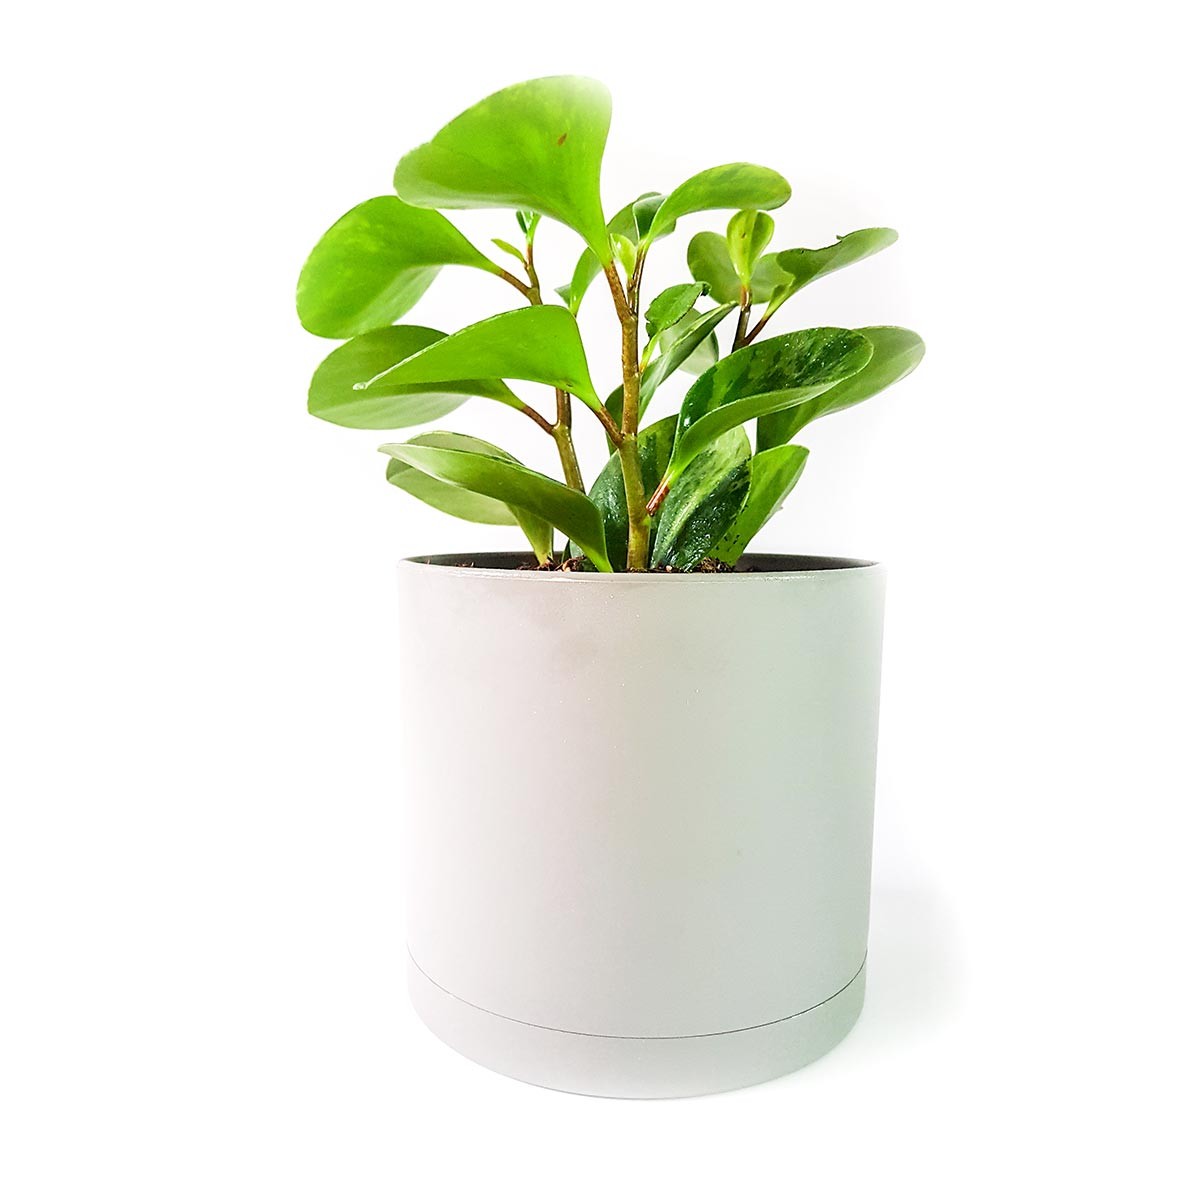  گیاه پپرومیا برگ قاشقی به همراه گلدان میکا استوانه ای | سایز متوسط